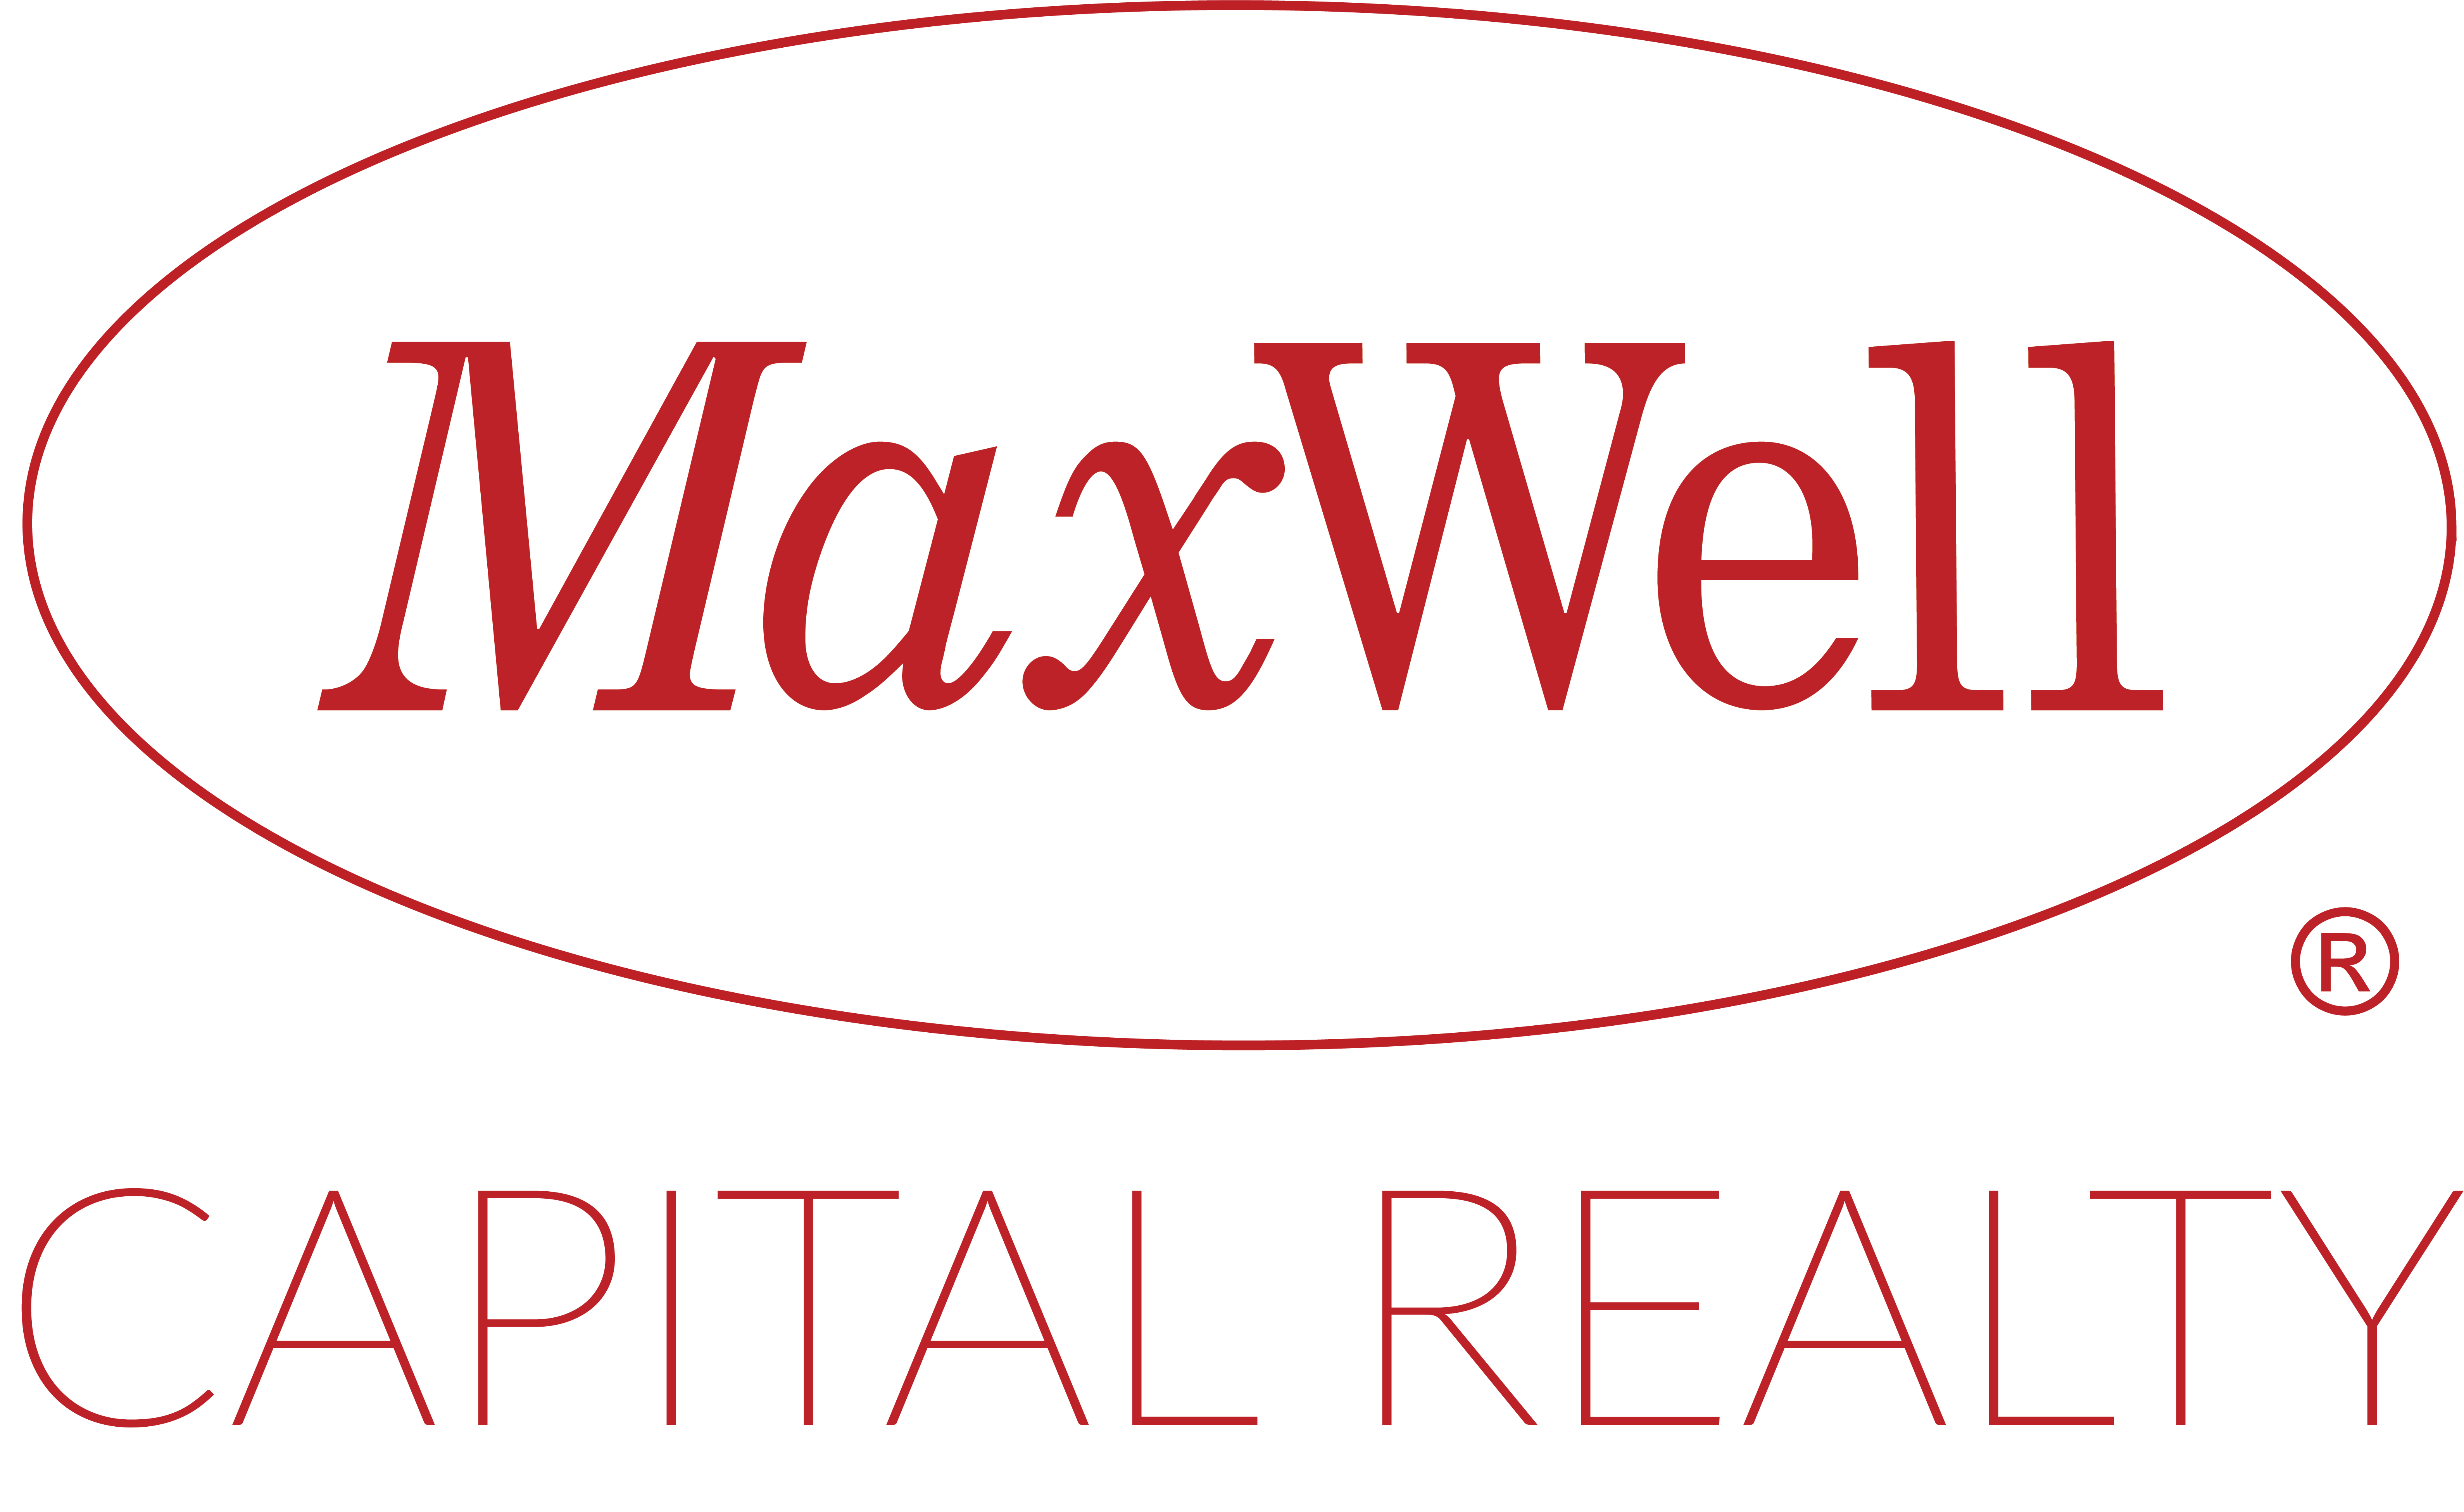 Maxwell Capital Realty